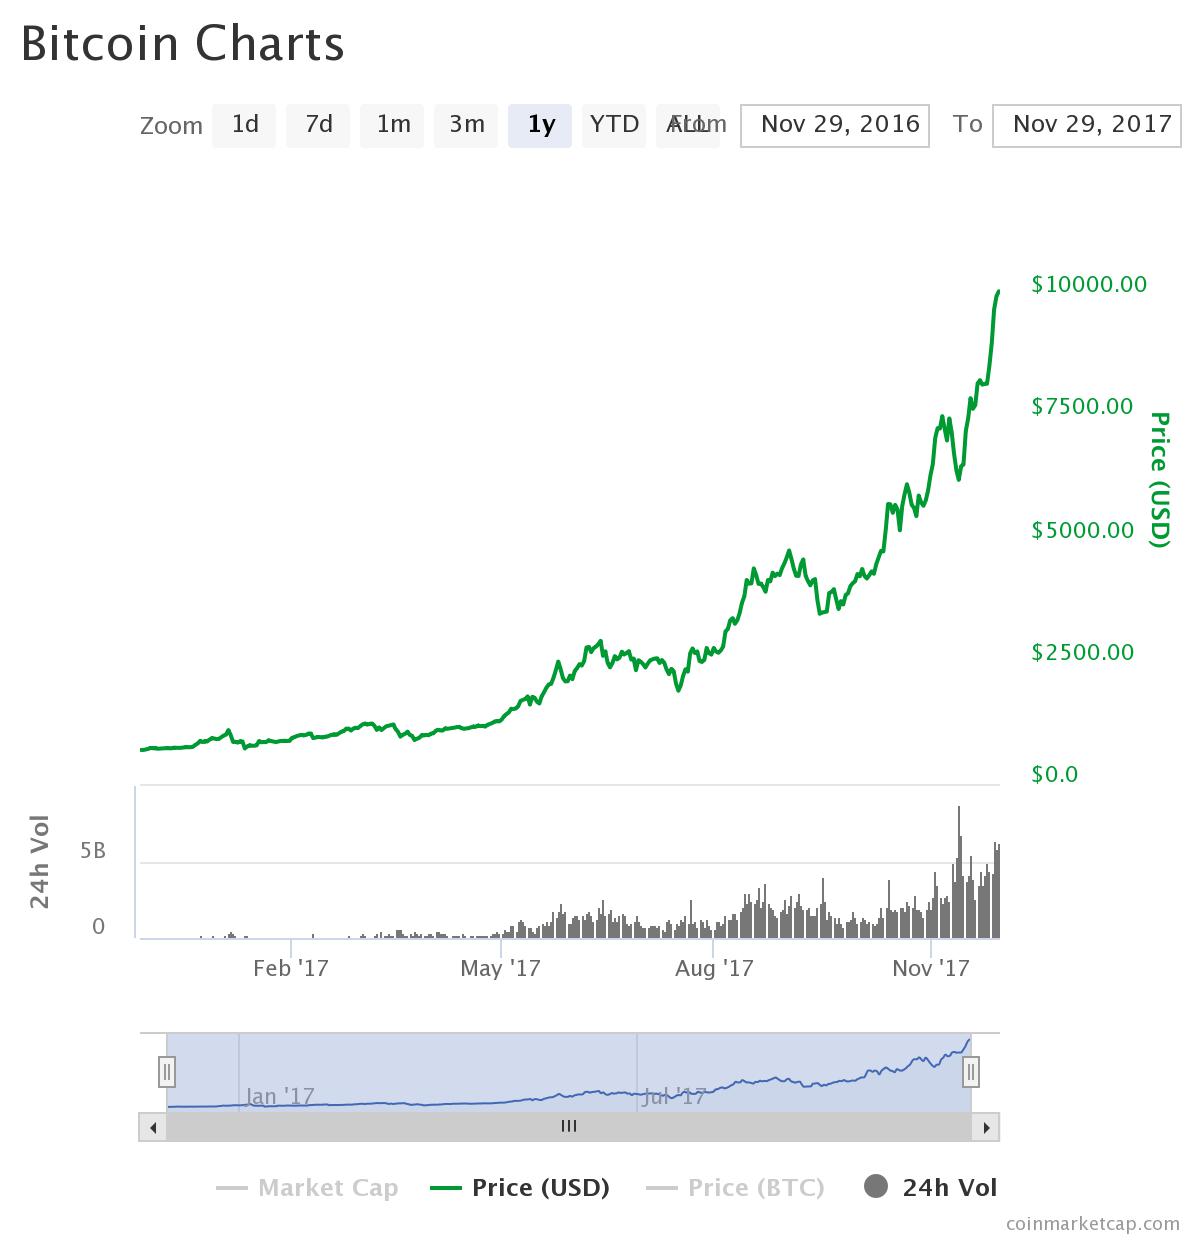 Bitcoin hit 10000